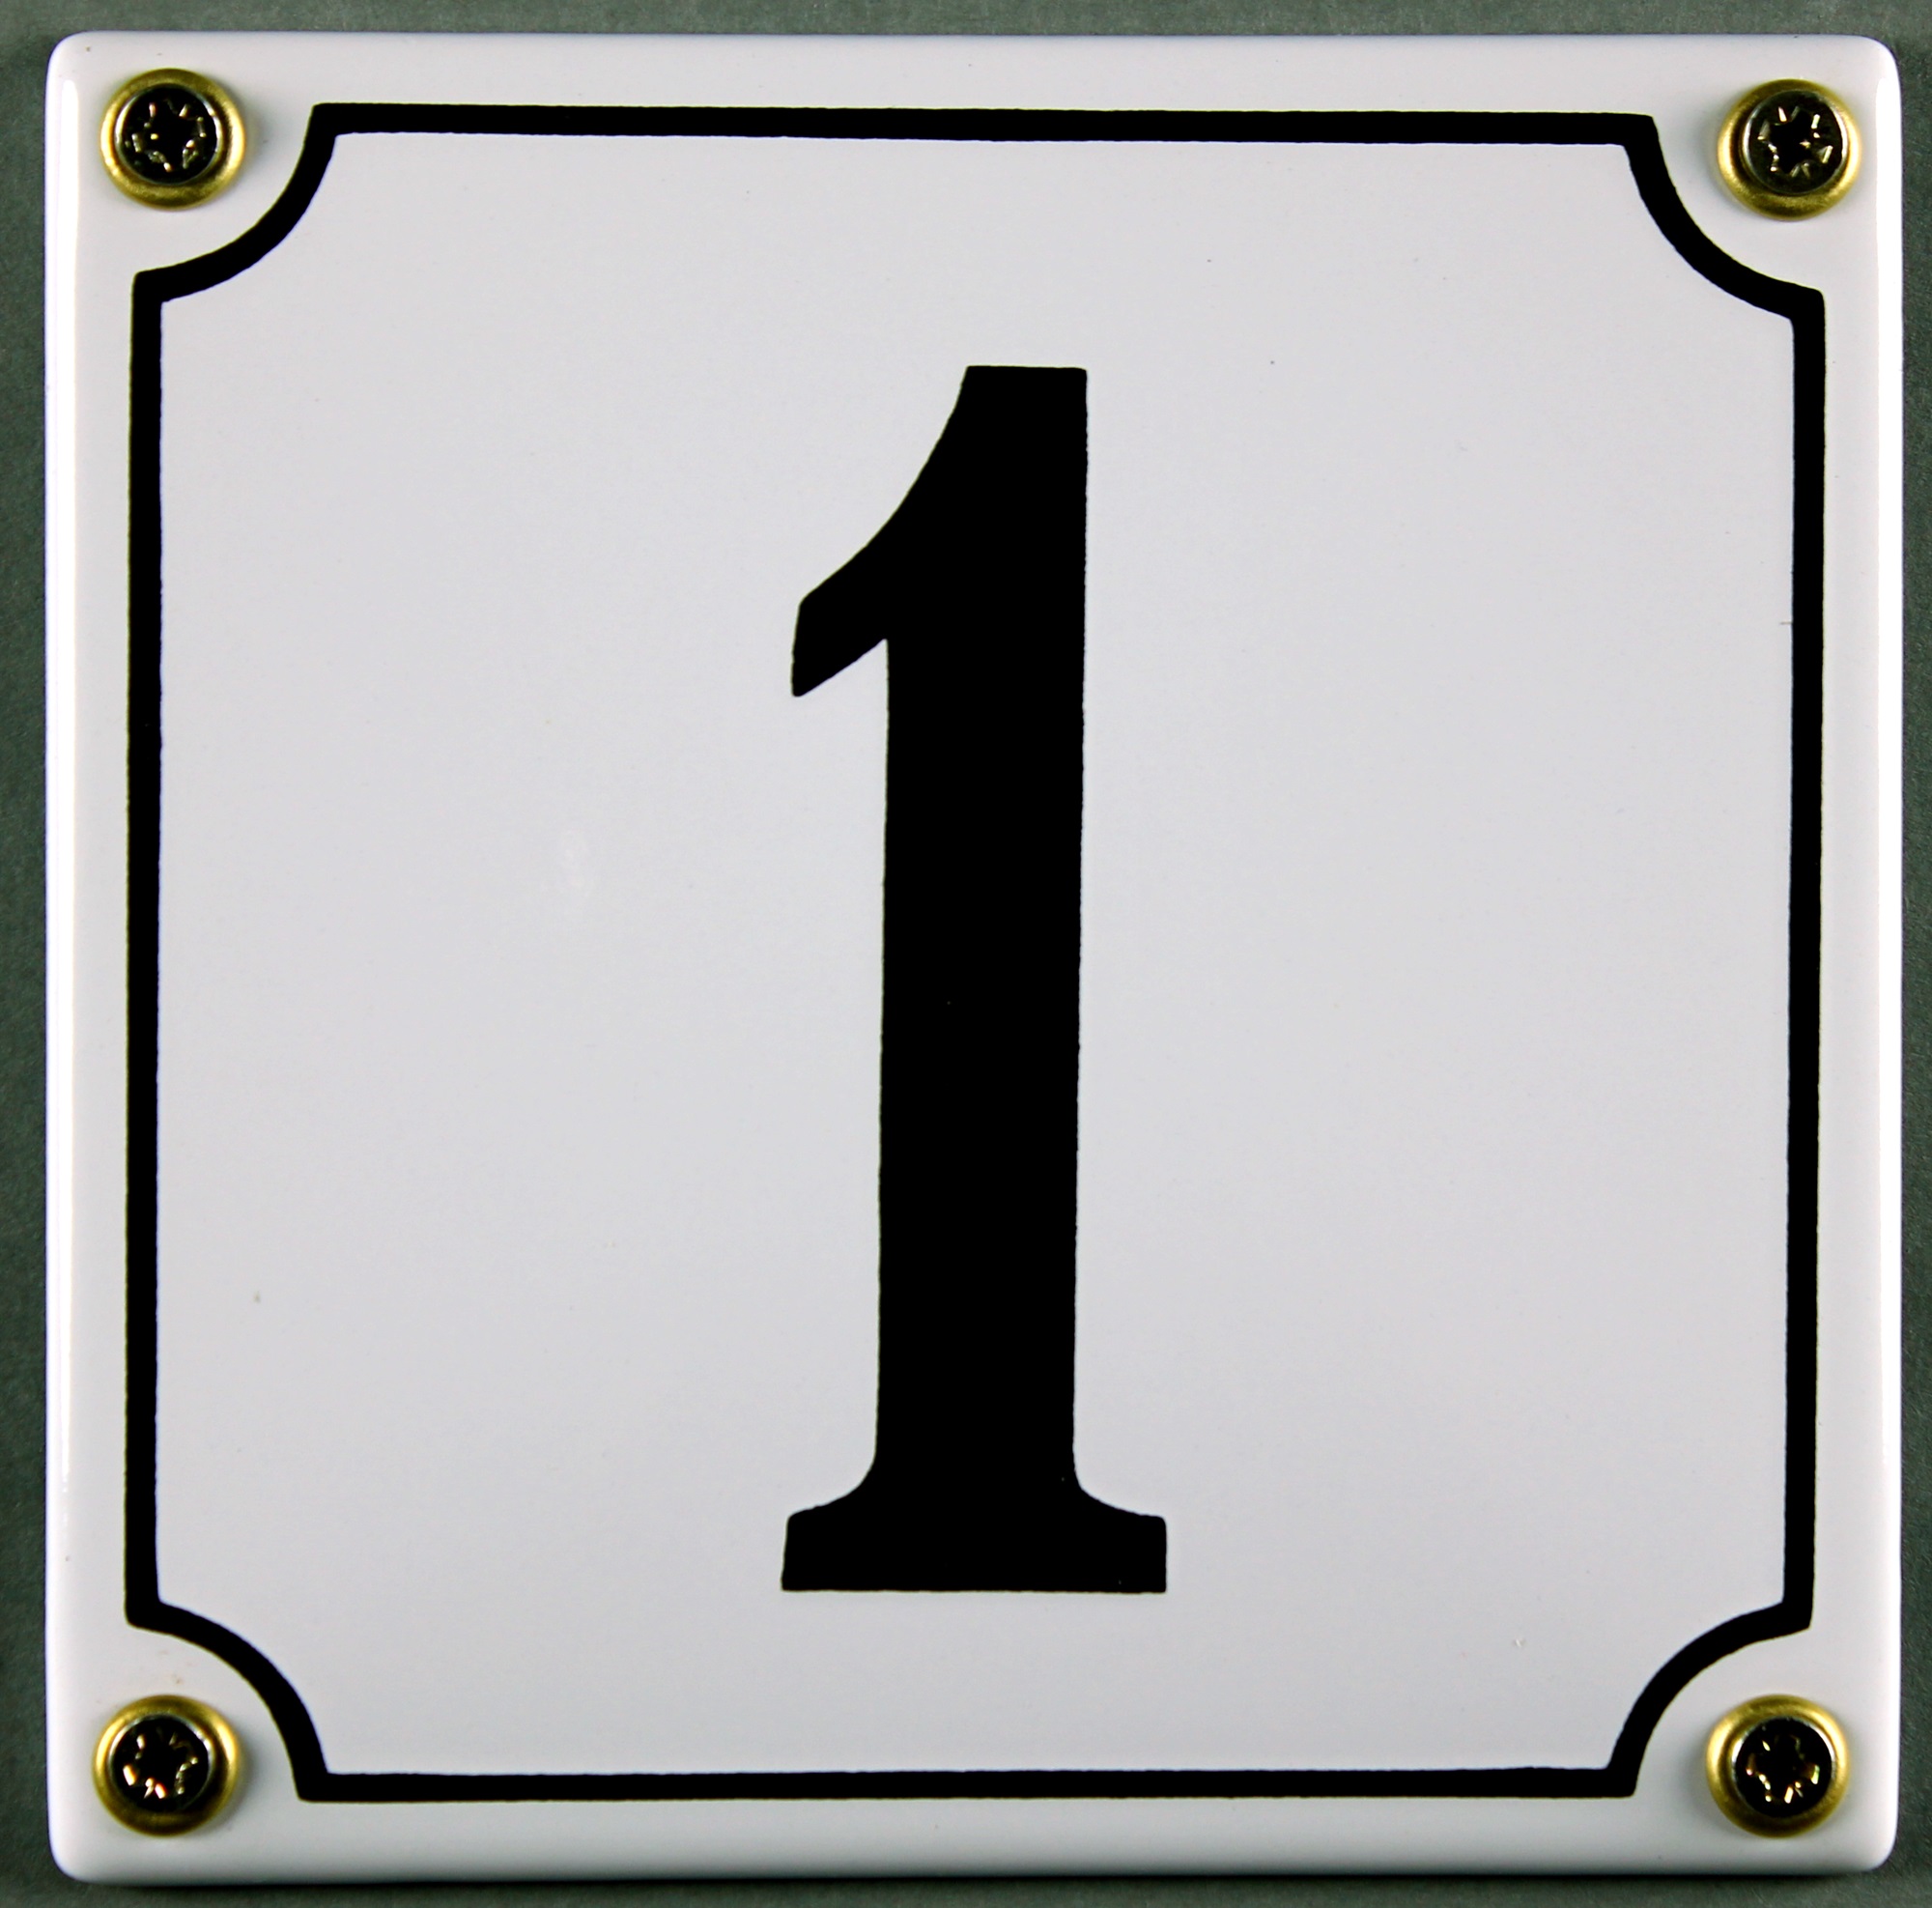 Weiße Emaille Hausnummer /"29/" 14x12 cm Hausnummernschild sofort lieferbar Schild